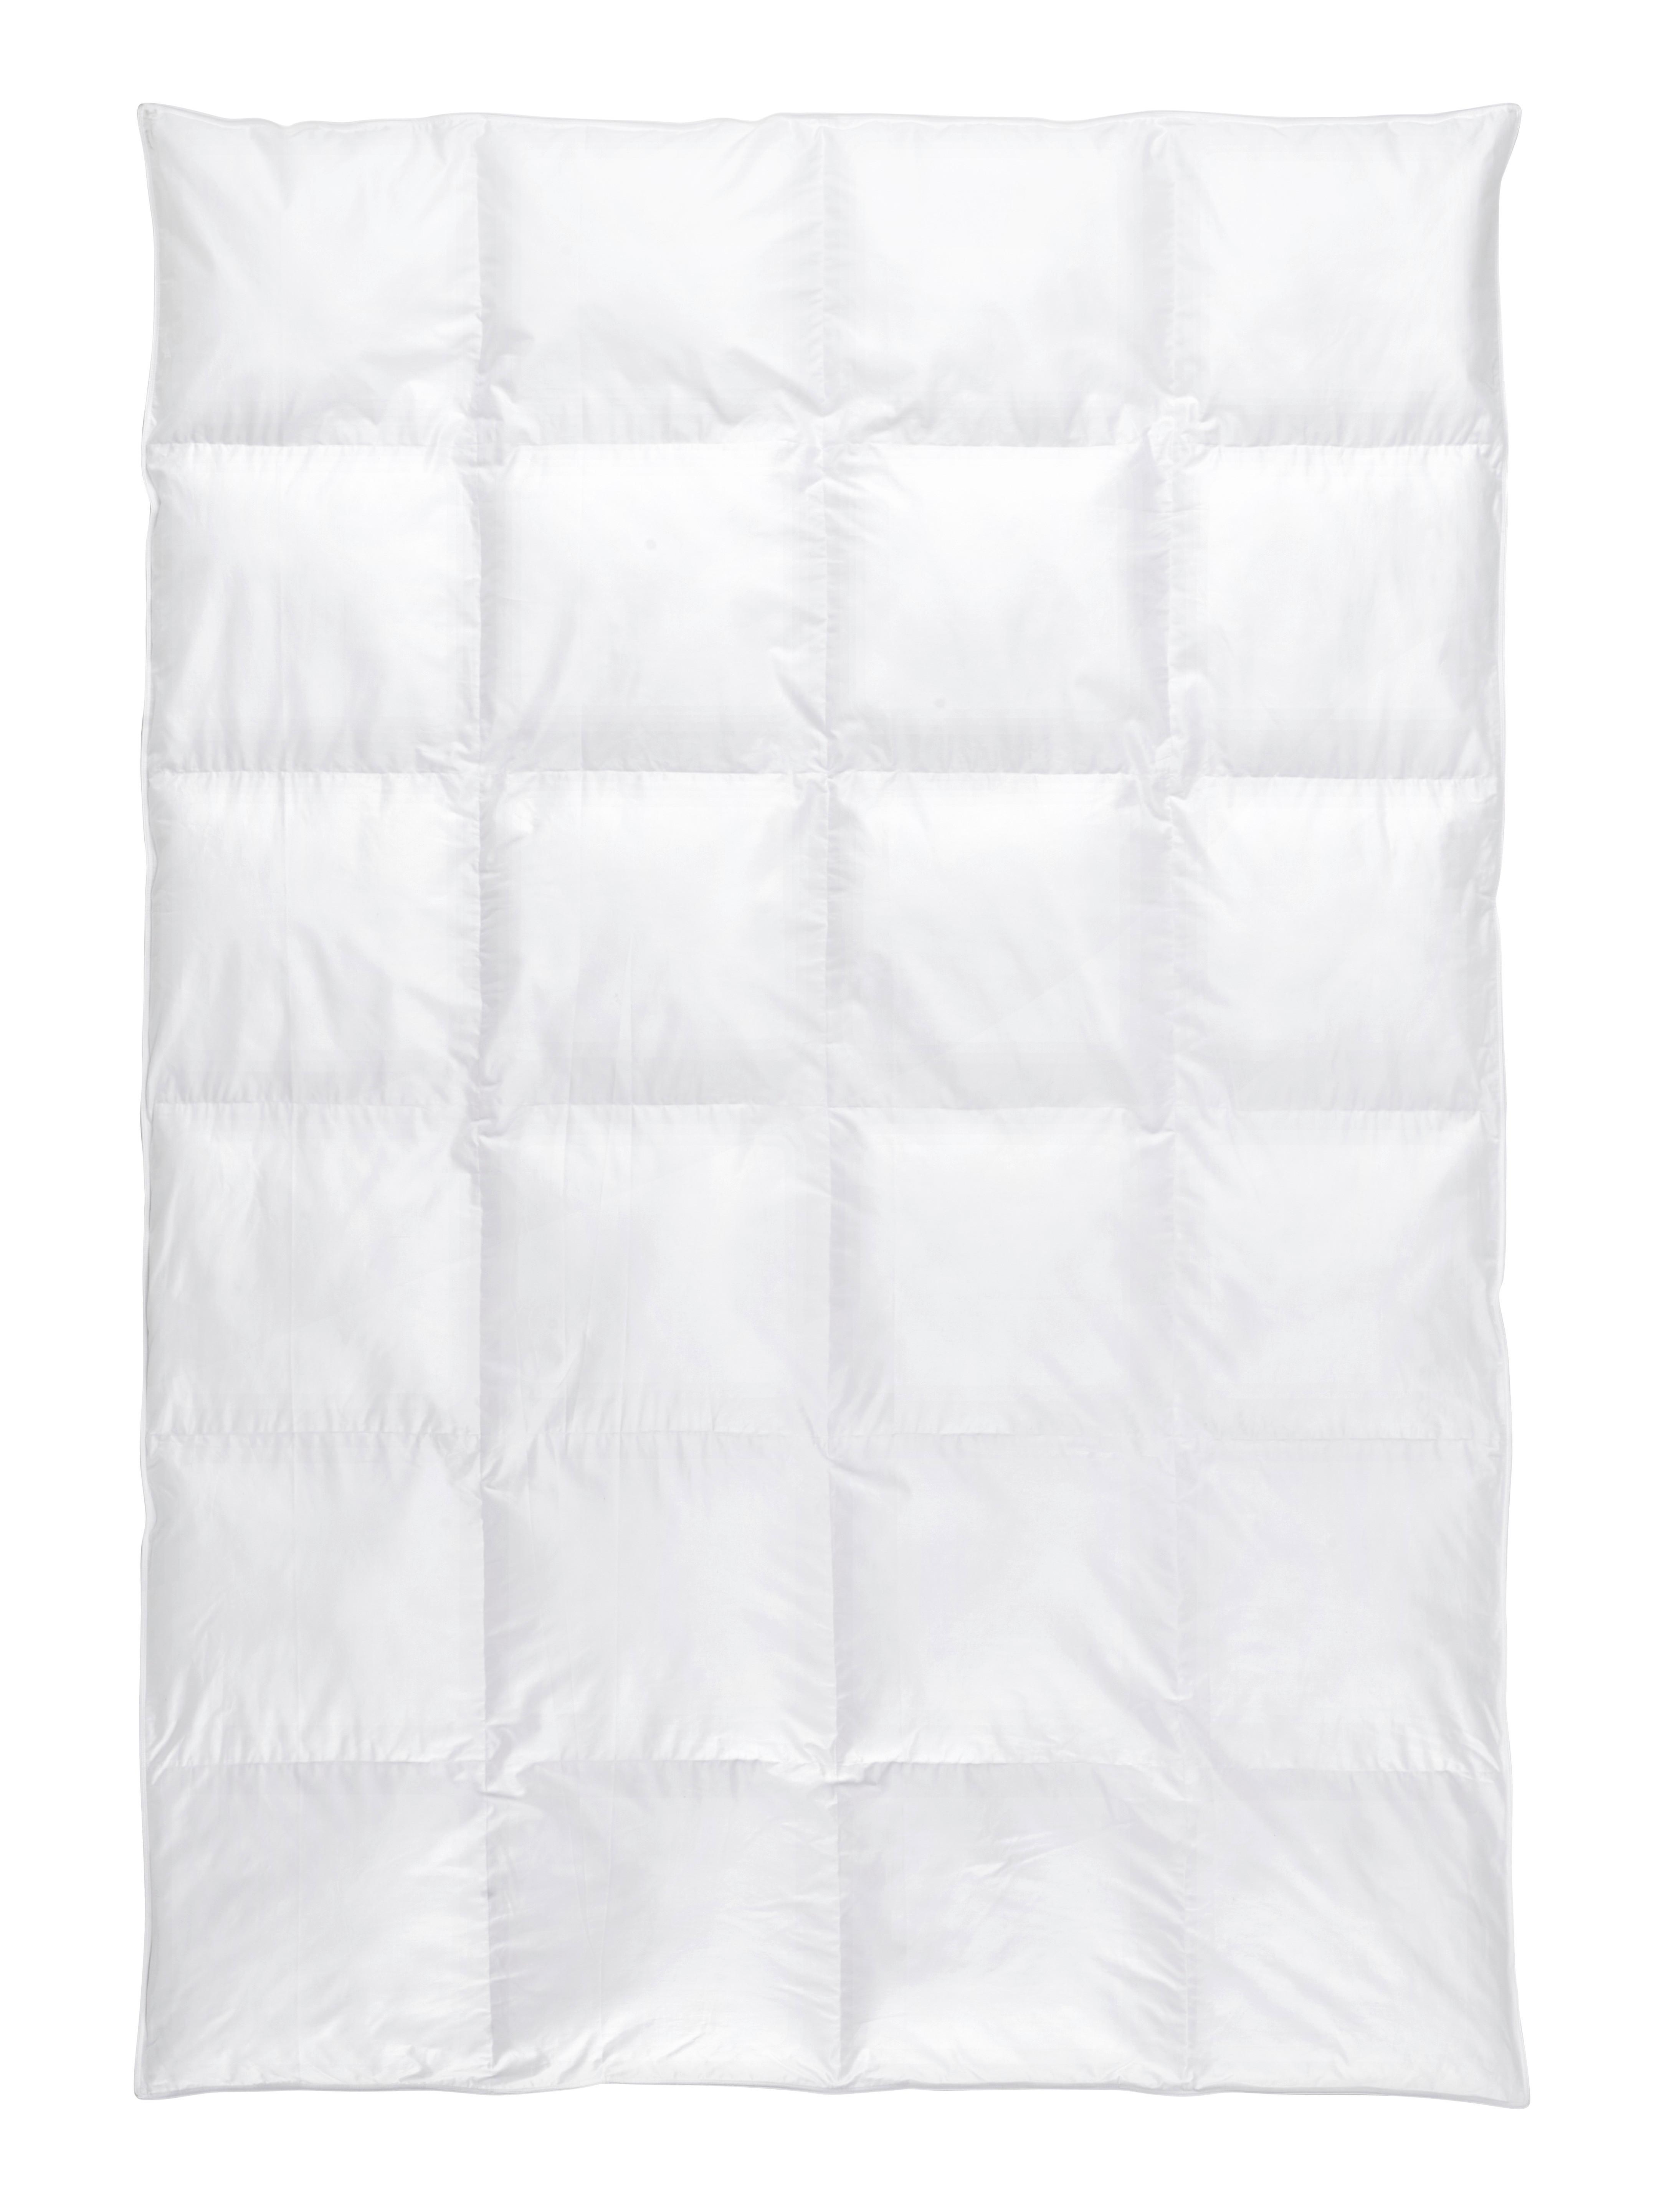 Celoročná Prikrývka Vegandown, 135-140/200cm - biela, Konvenčný, textil (135-140/200cm) - Premium Living